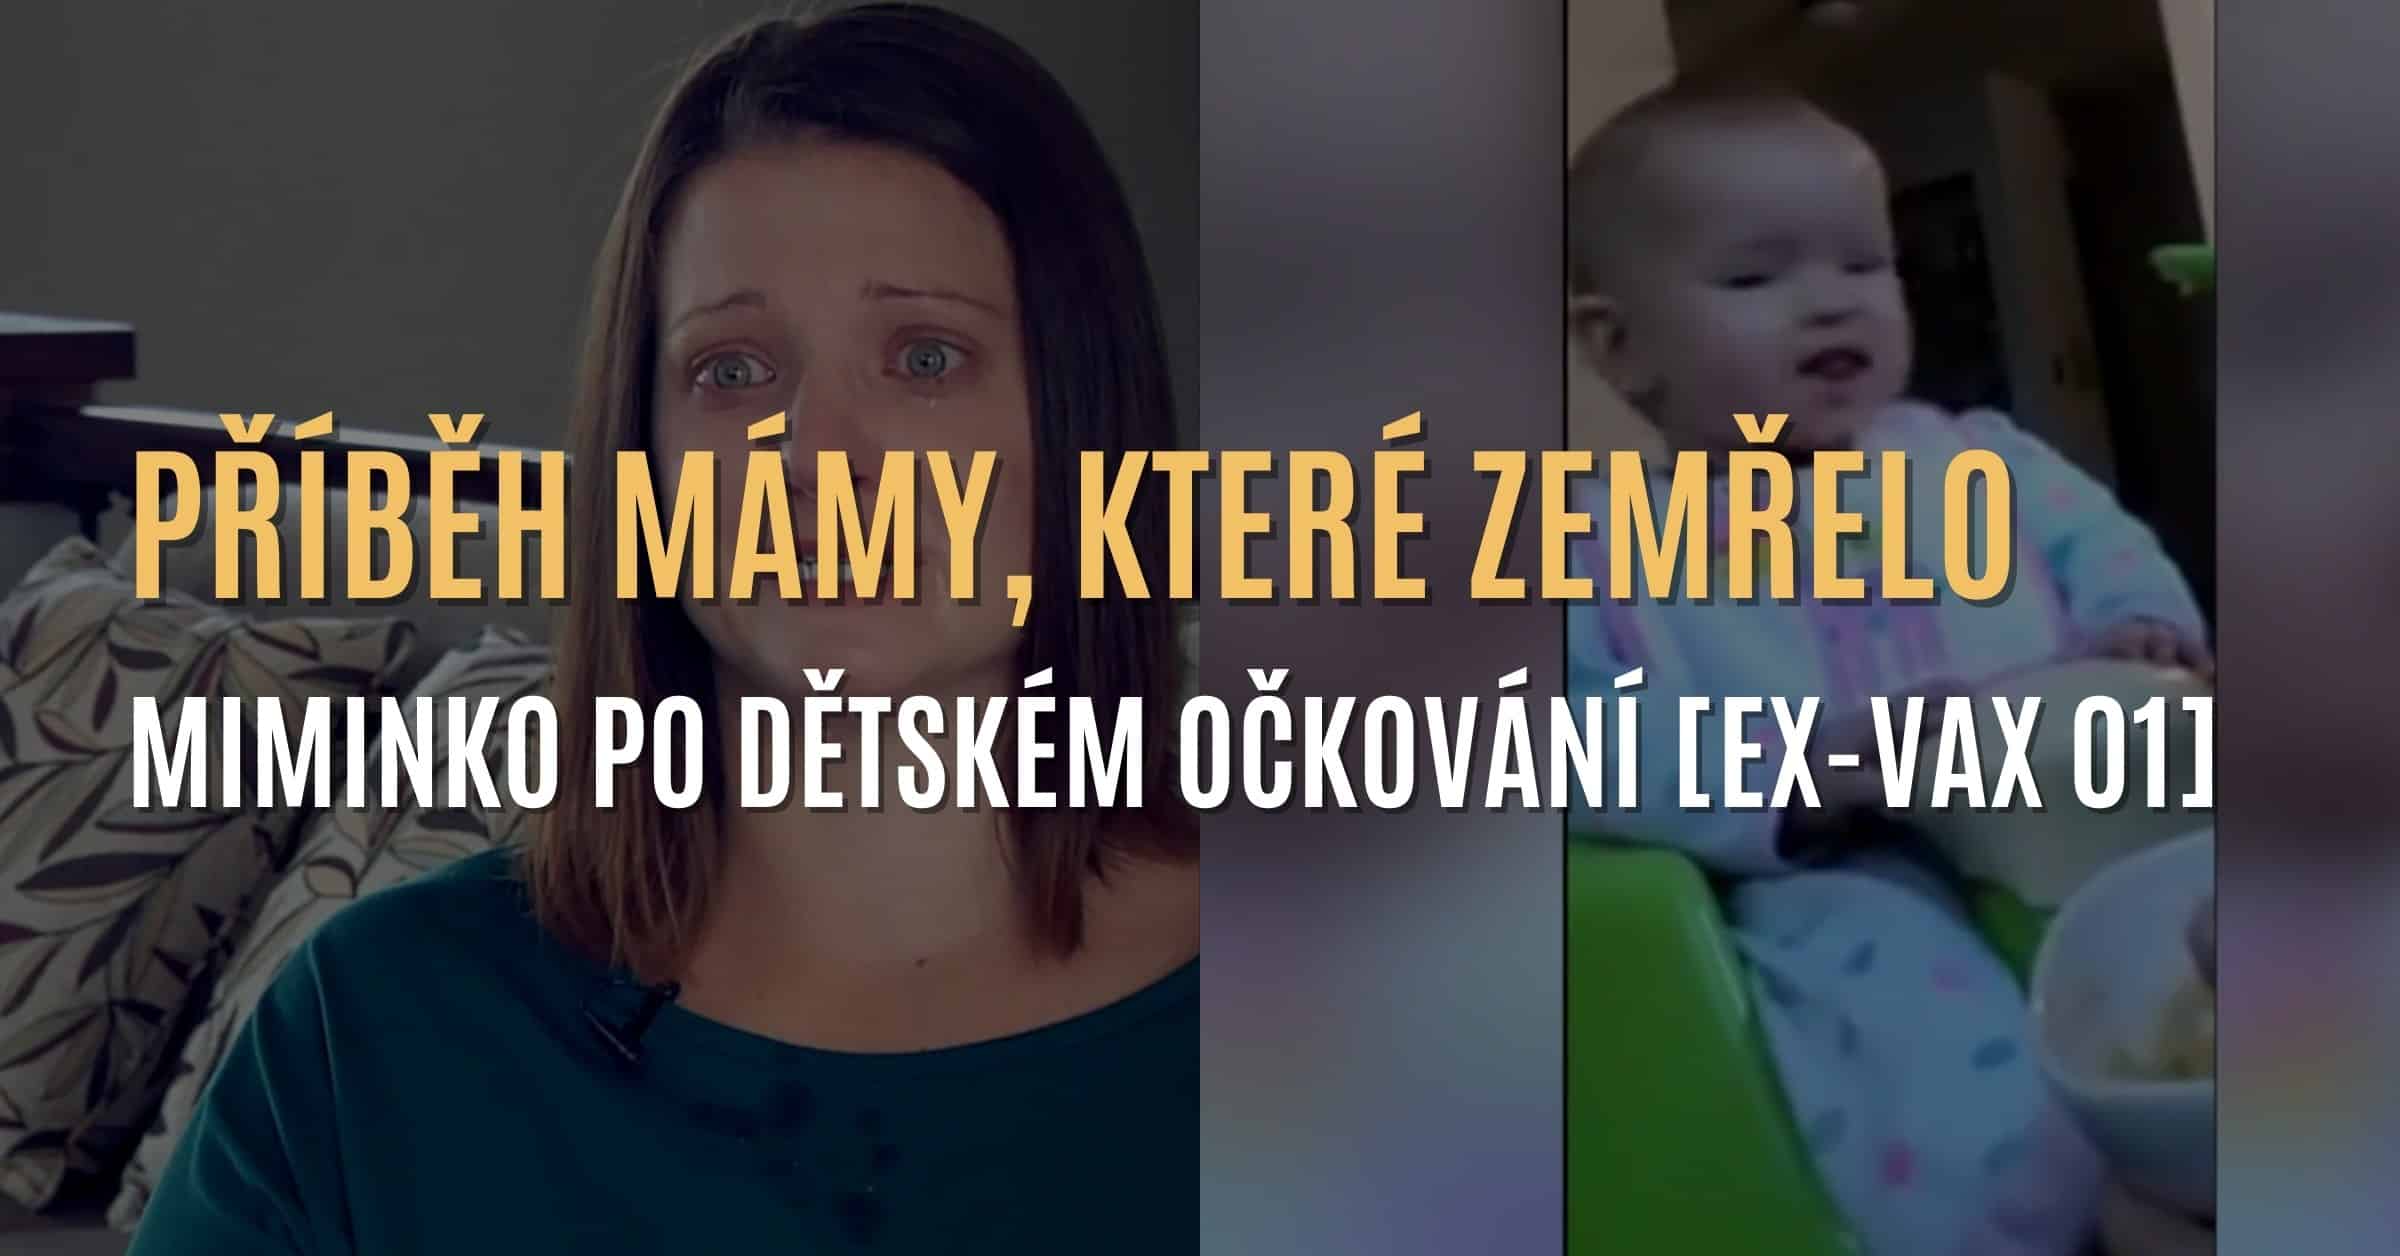 Příběh mámy, která přišla o své miminko po dětském očkování [EX-VAX 01]